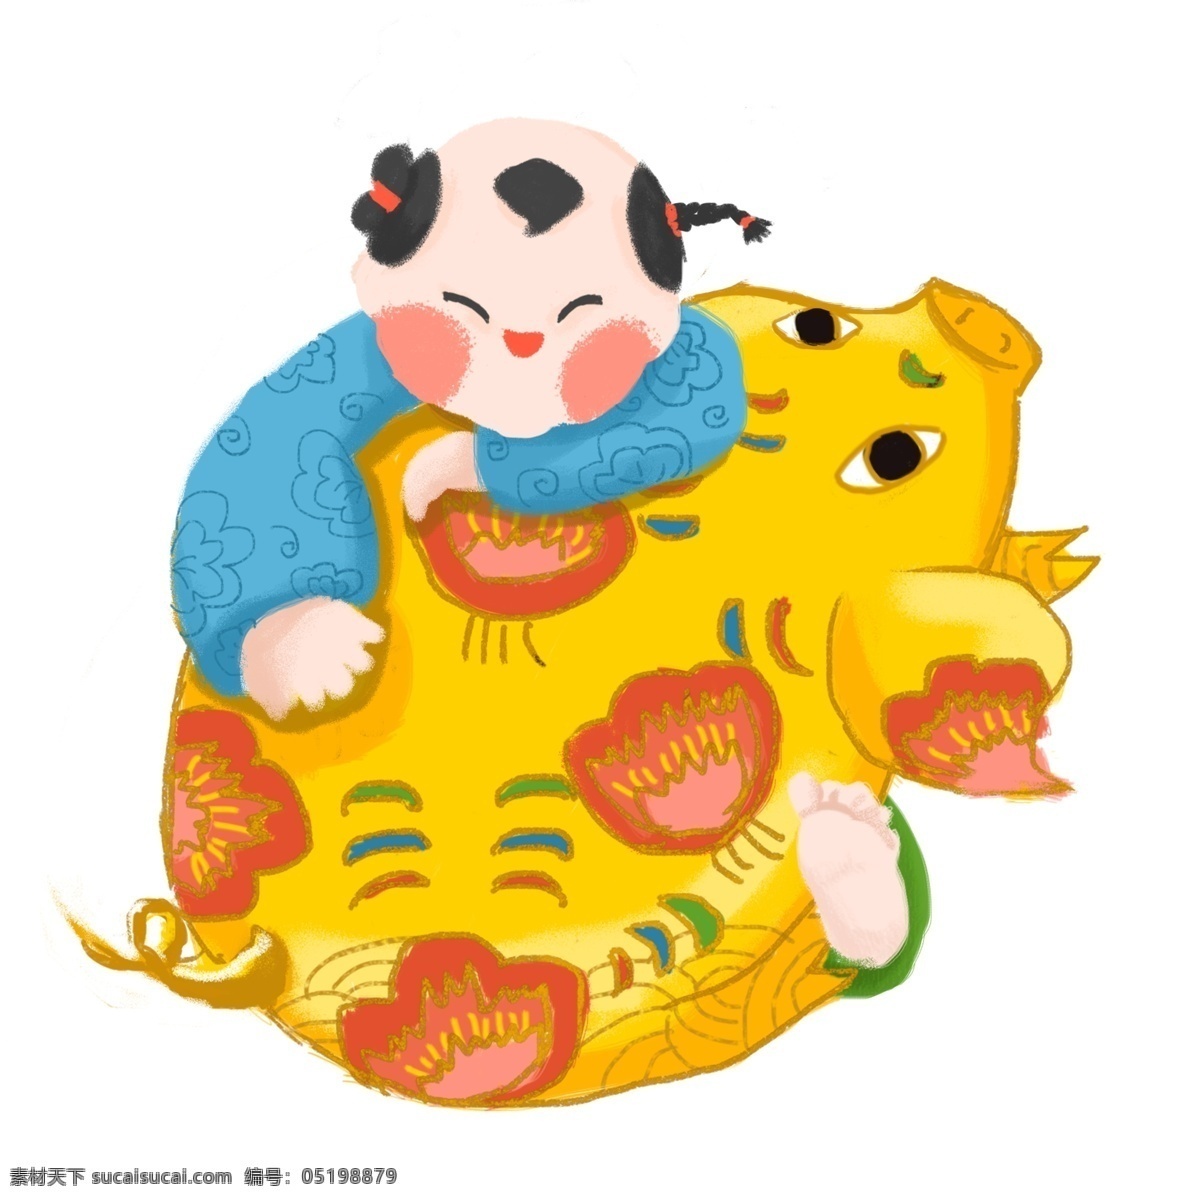 2019 生肖 猪 猪年 可爱 商用 插画 原创 金 福娃 生肖猪 金猪 娃娃 古代娃娃 抱金猪